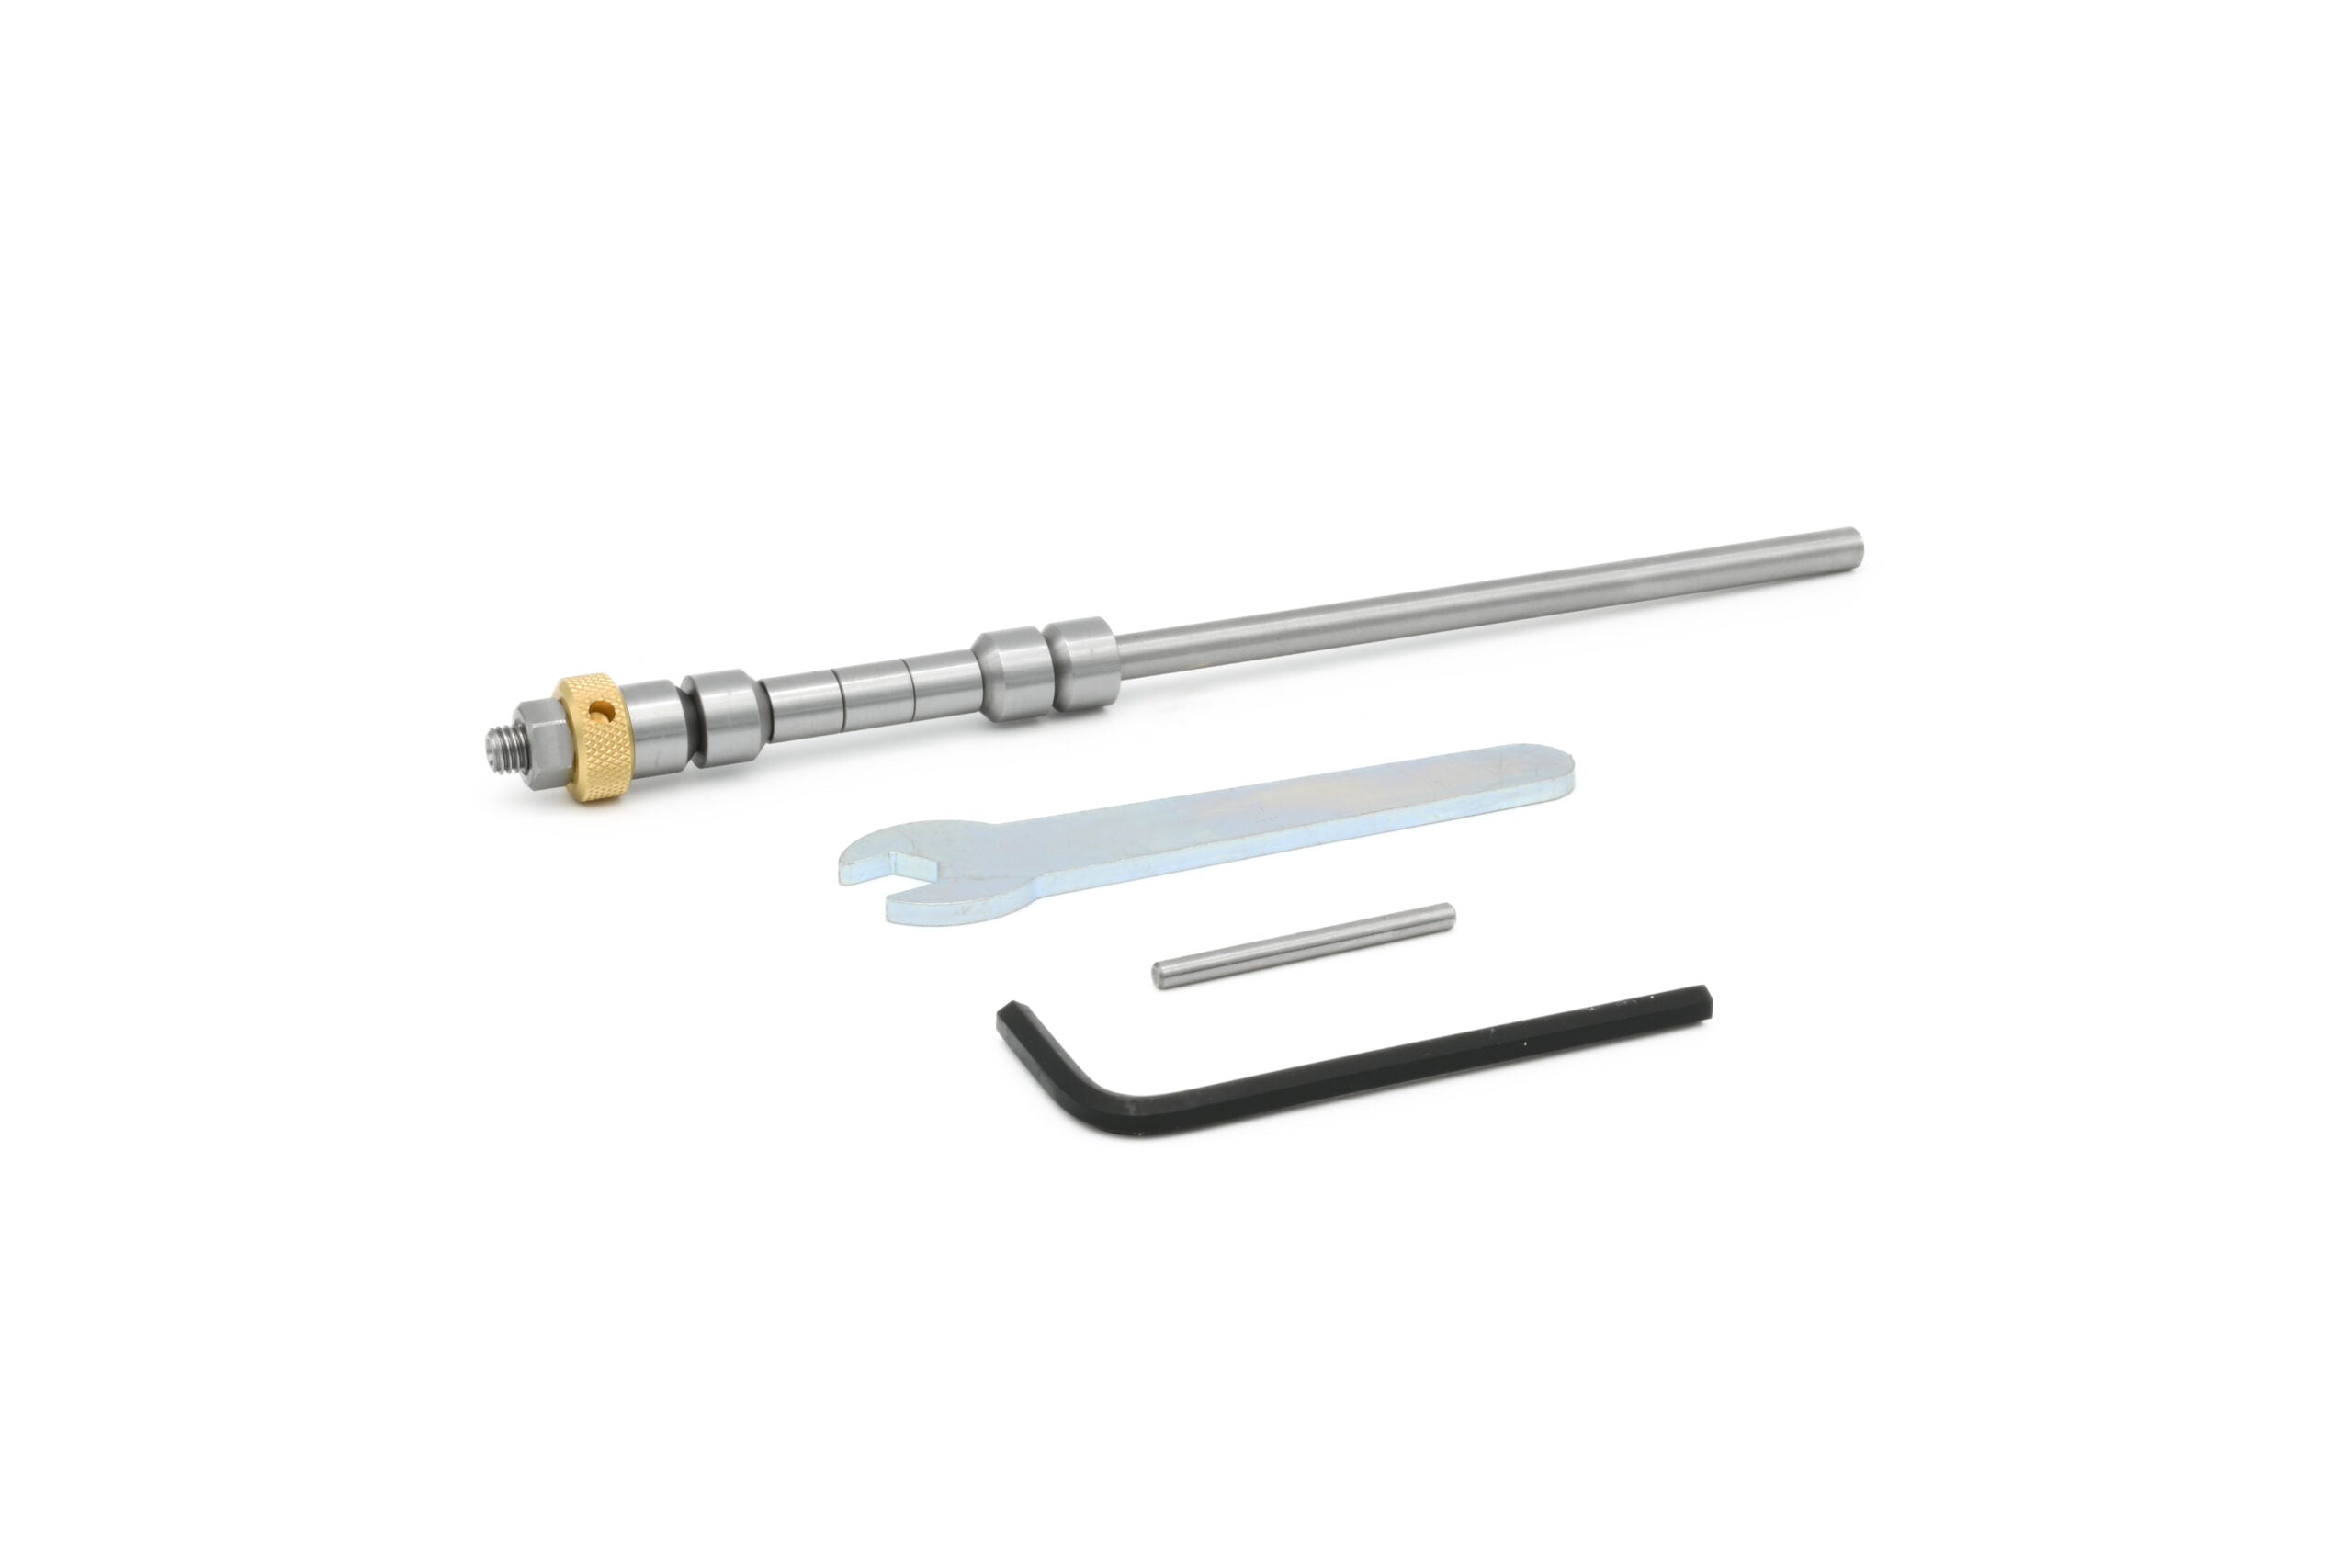 Rotur Pen Mandrel Kit - no shank